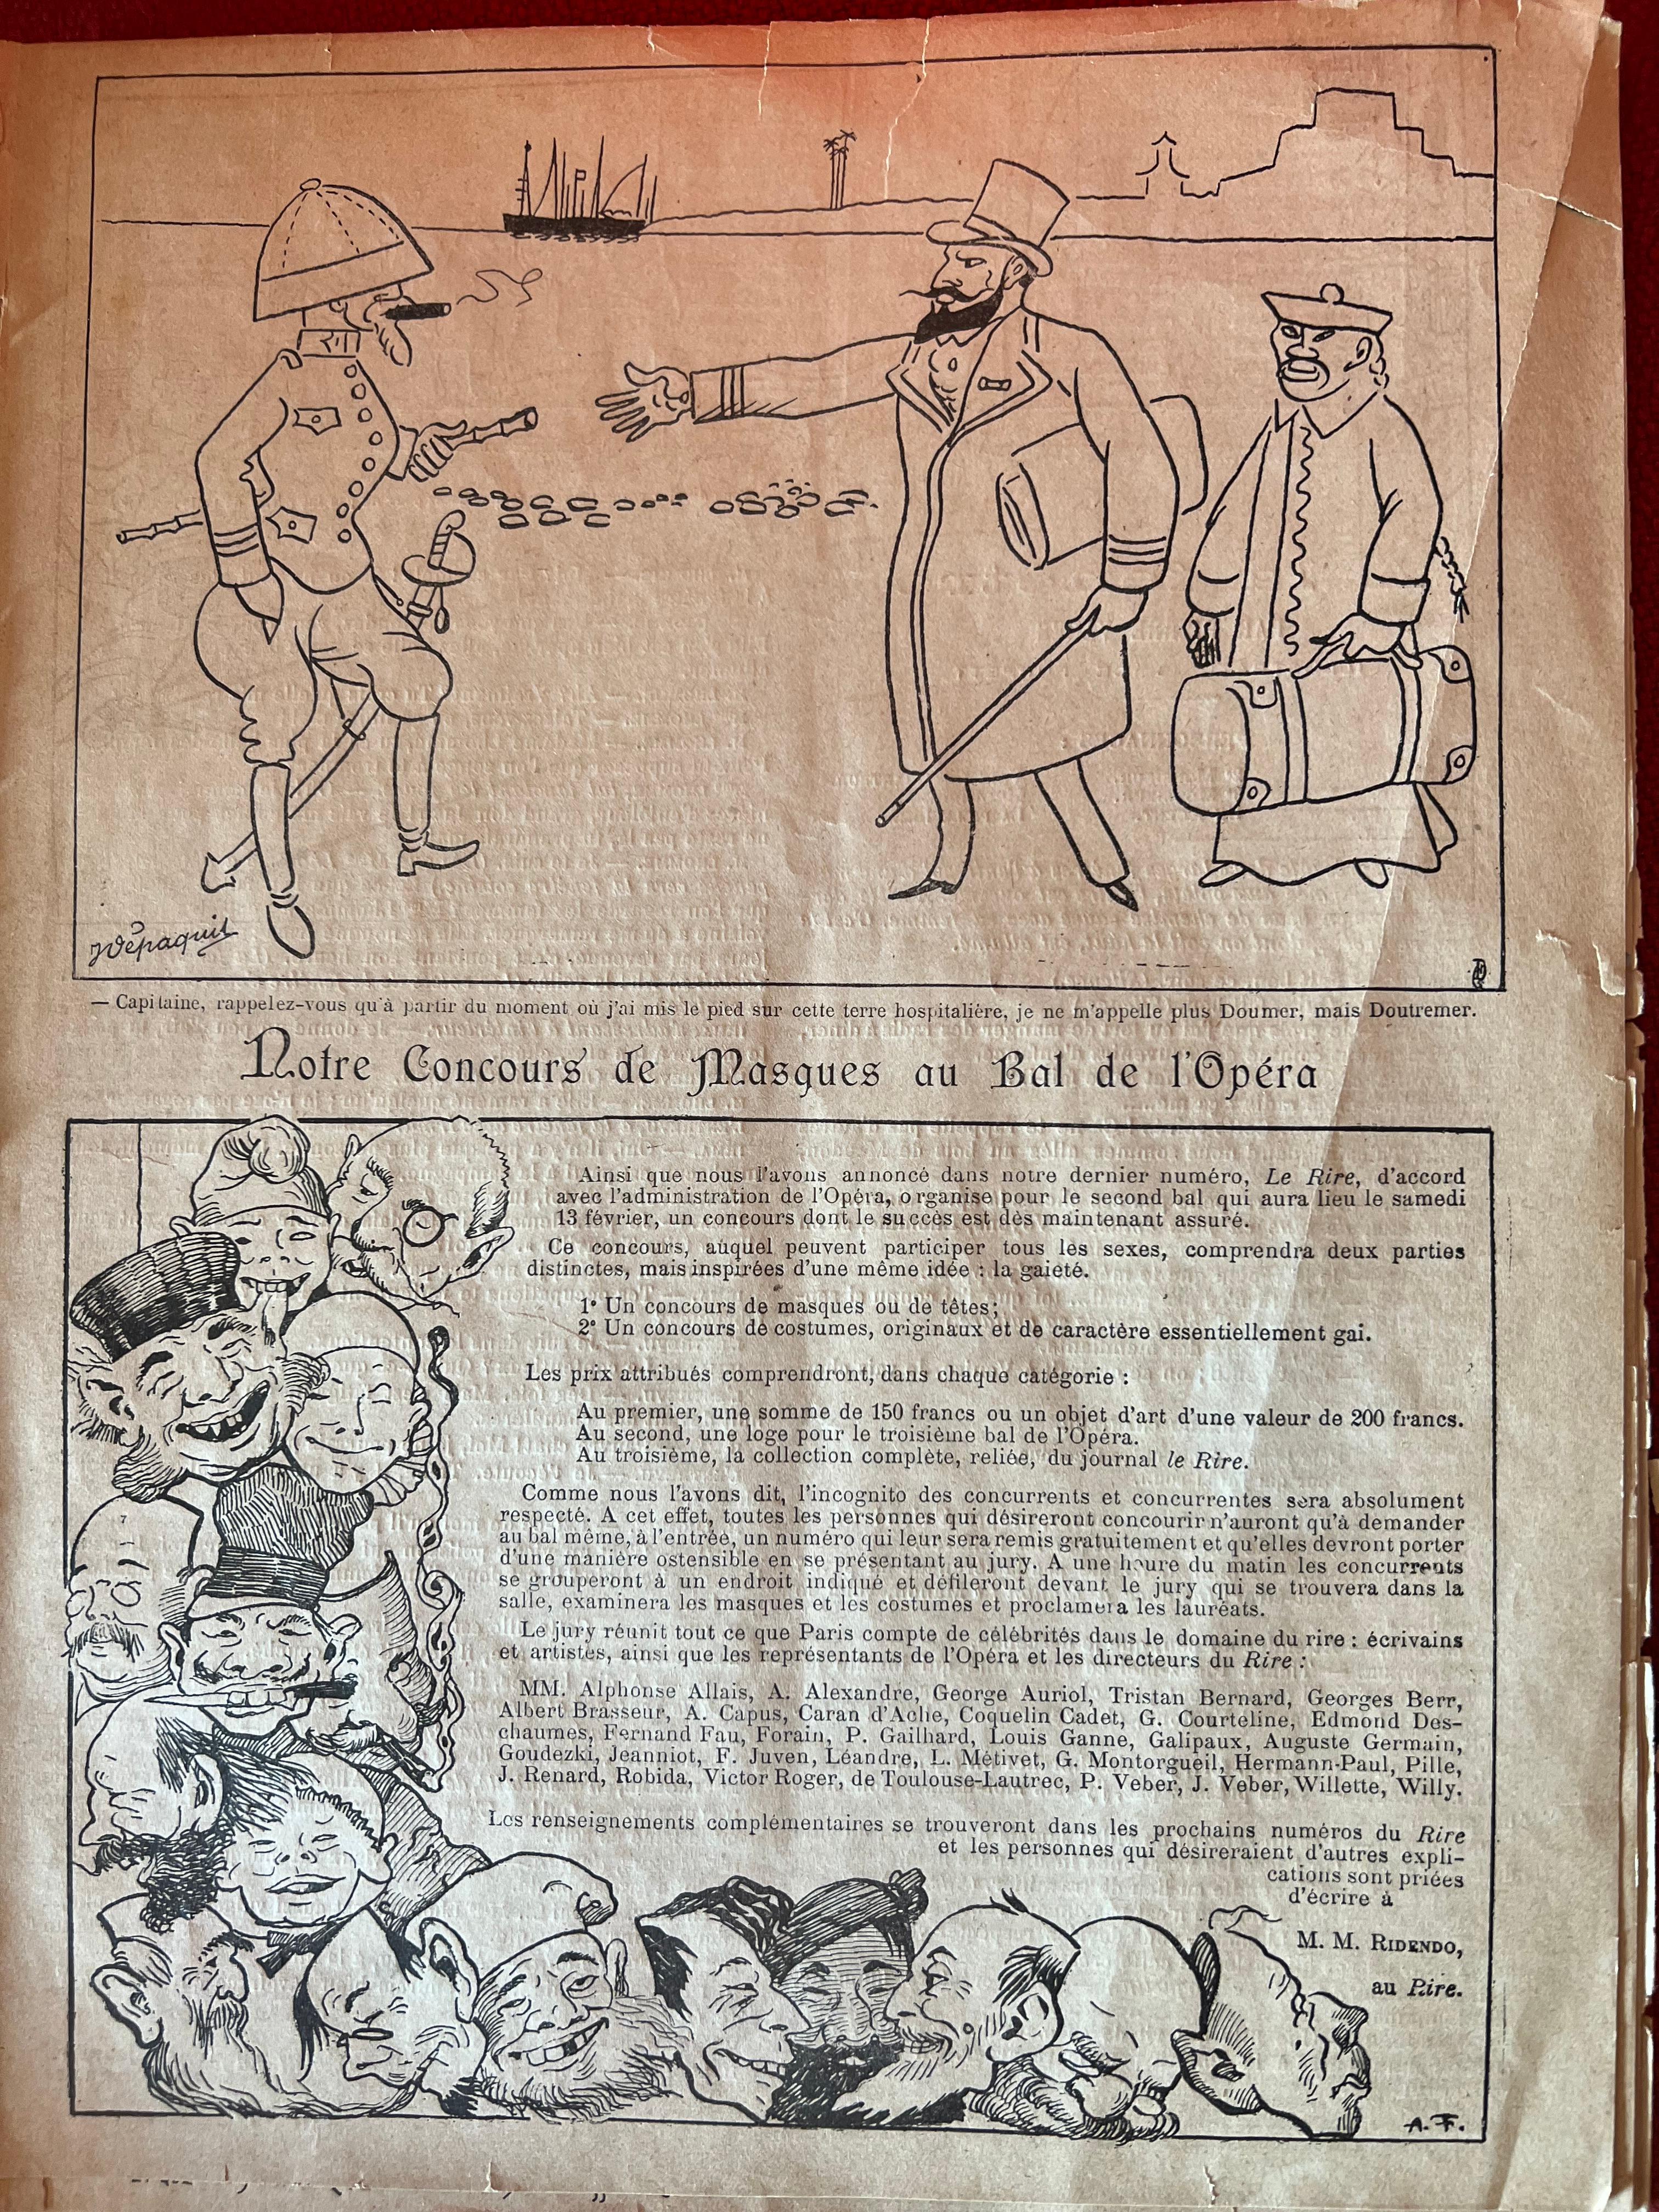 Couvertures de magazines originales « Le Rire » de la fin du XIXe siècle dans des cadres dorés, lot de 2 en vente 12